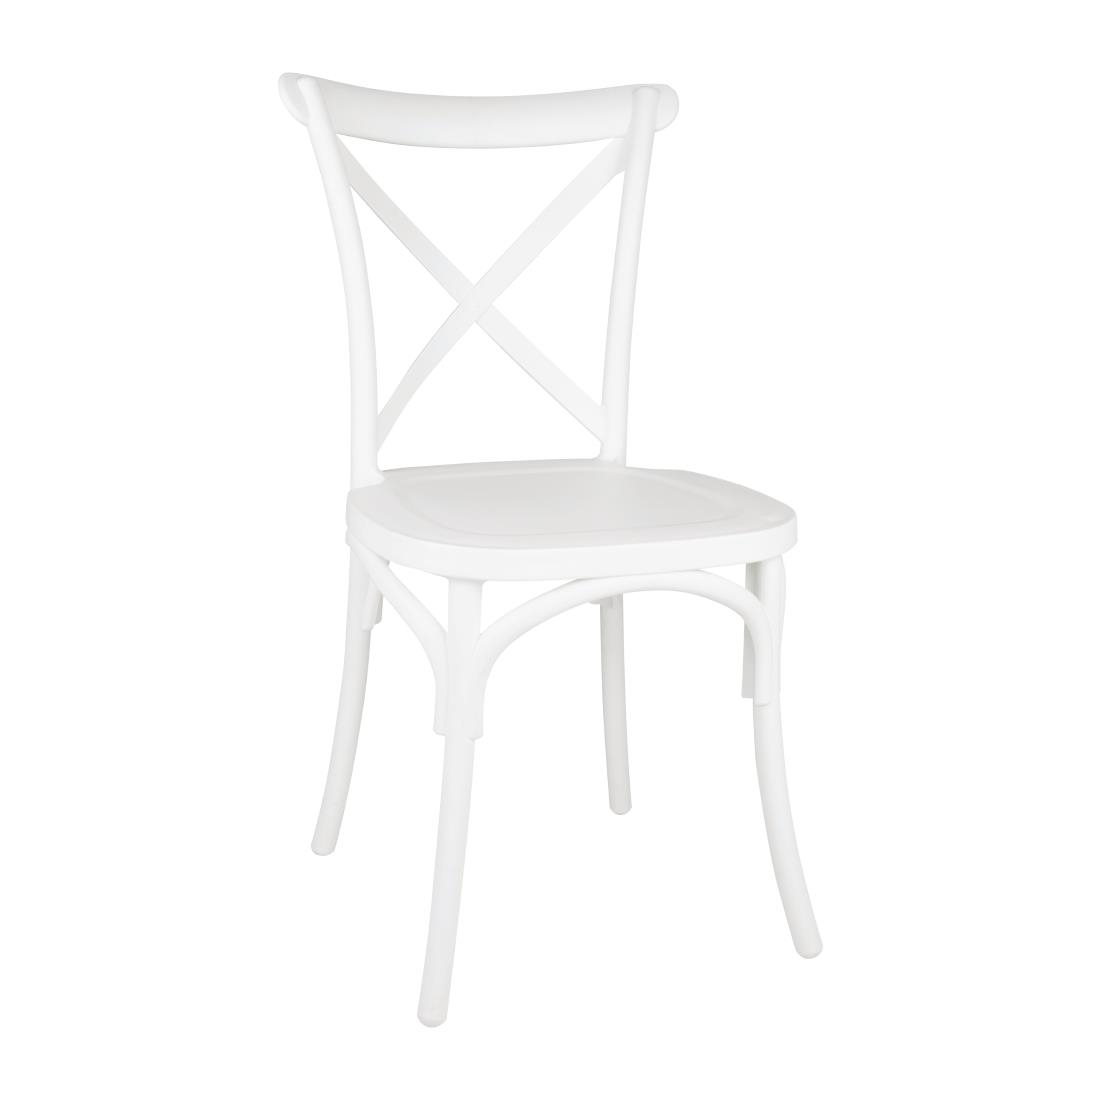 Bolero Polypropylene Cross Back Side Chair White (Pack of 4)